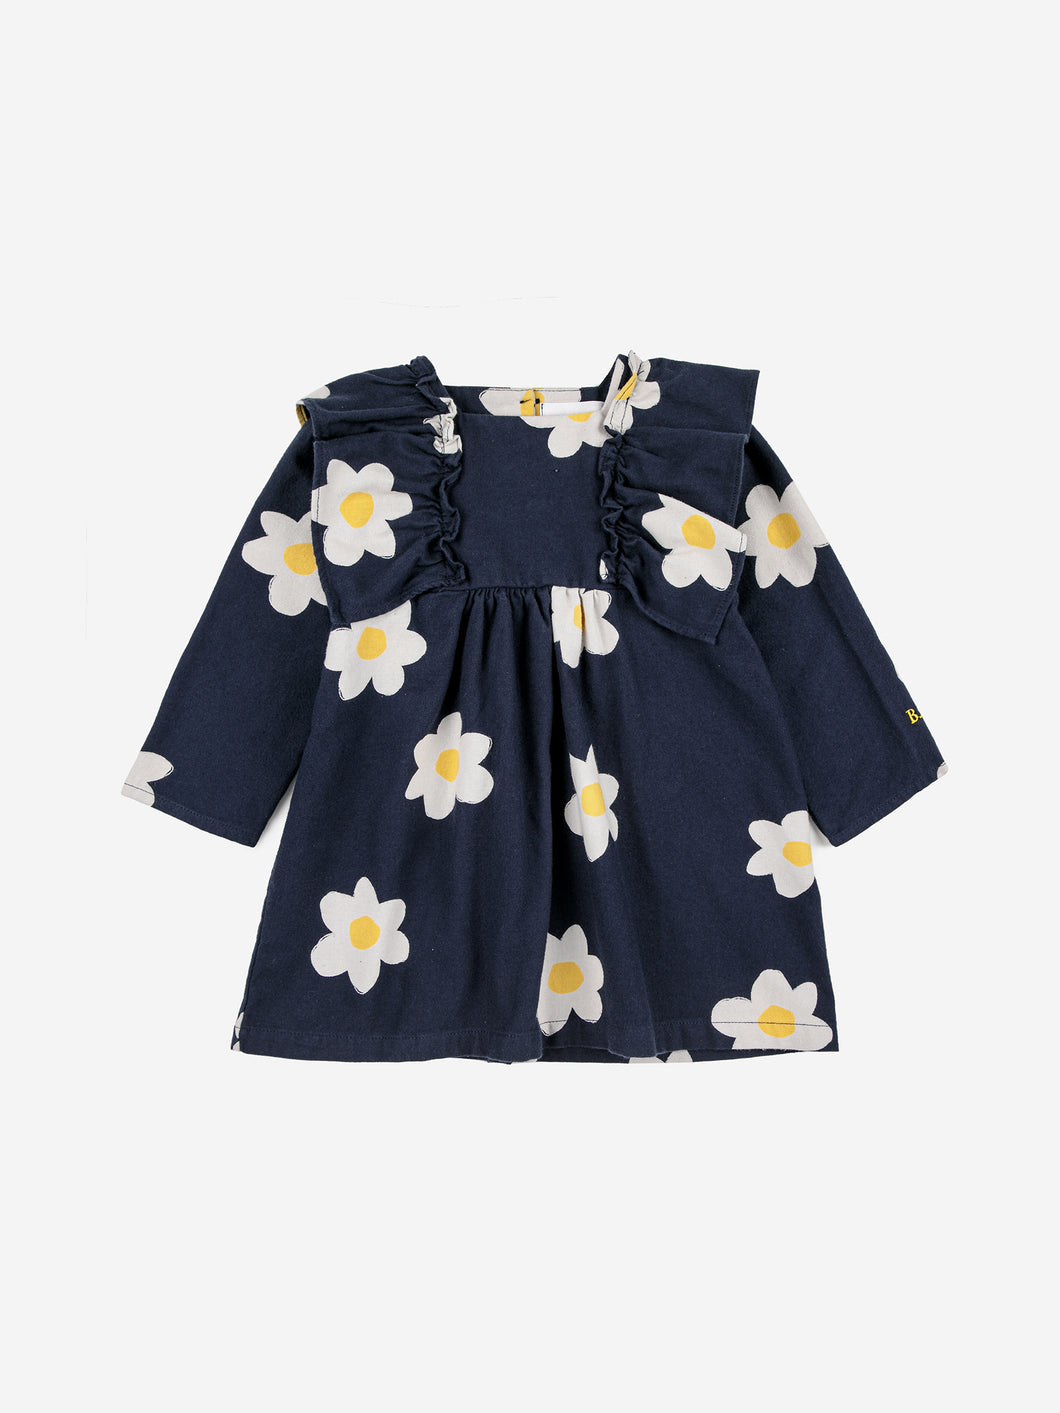 BOBOCHOSES abito bambina in cotone colore blu stampa fiori